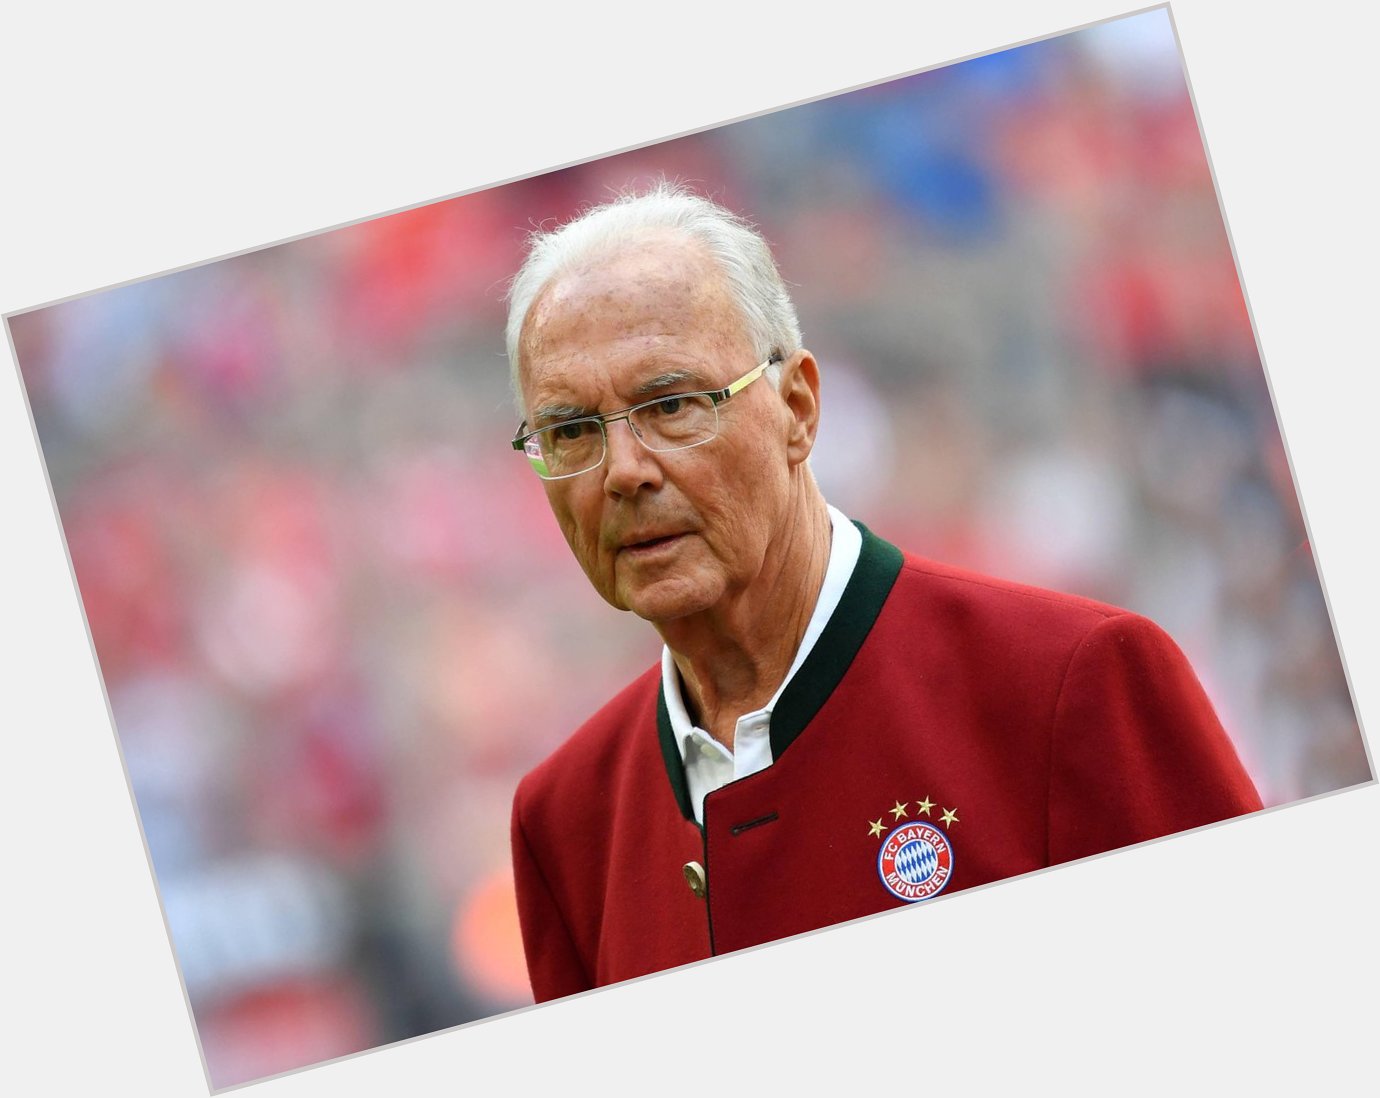 Happy Birthday lieber Franz Beckenbauer! 